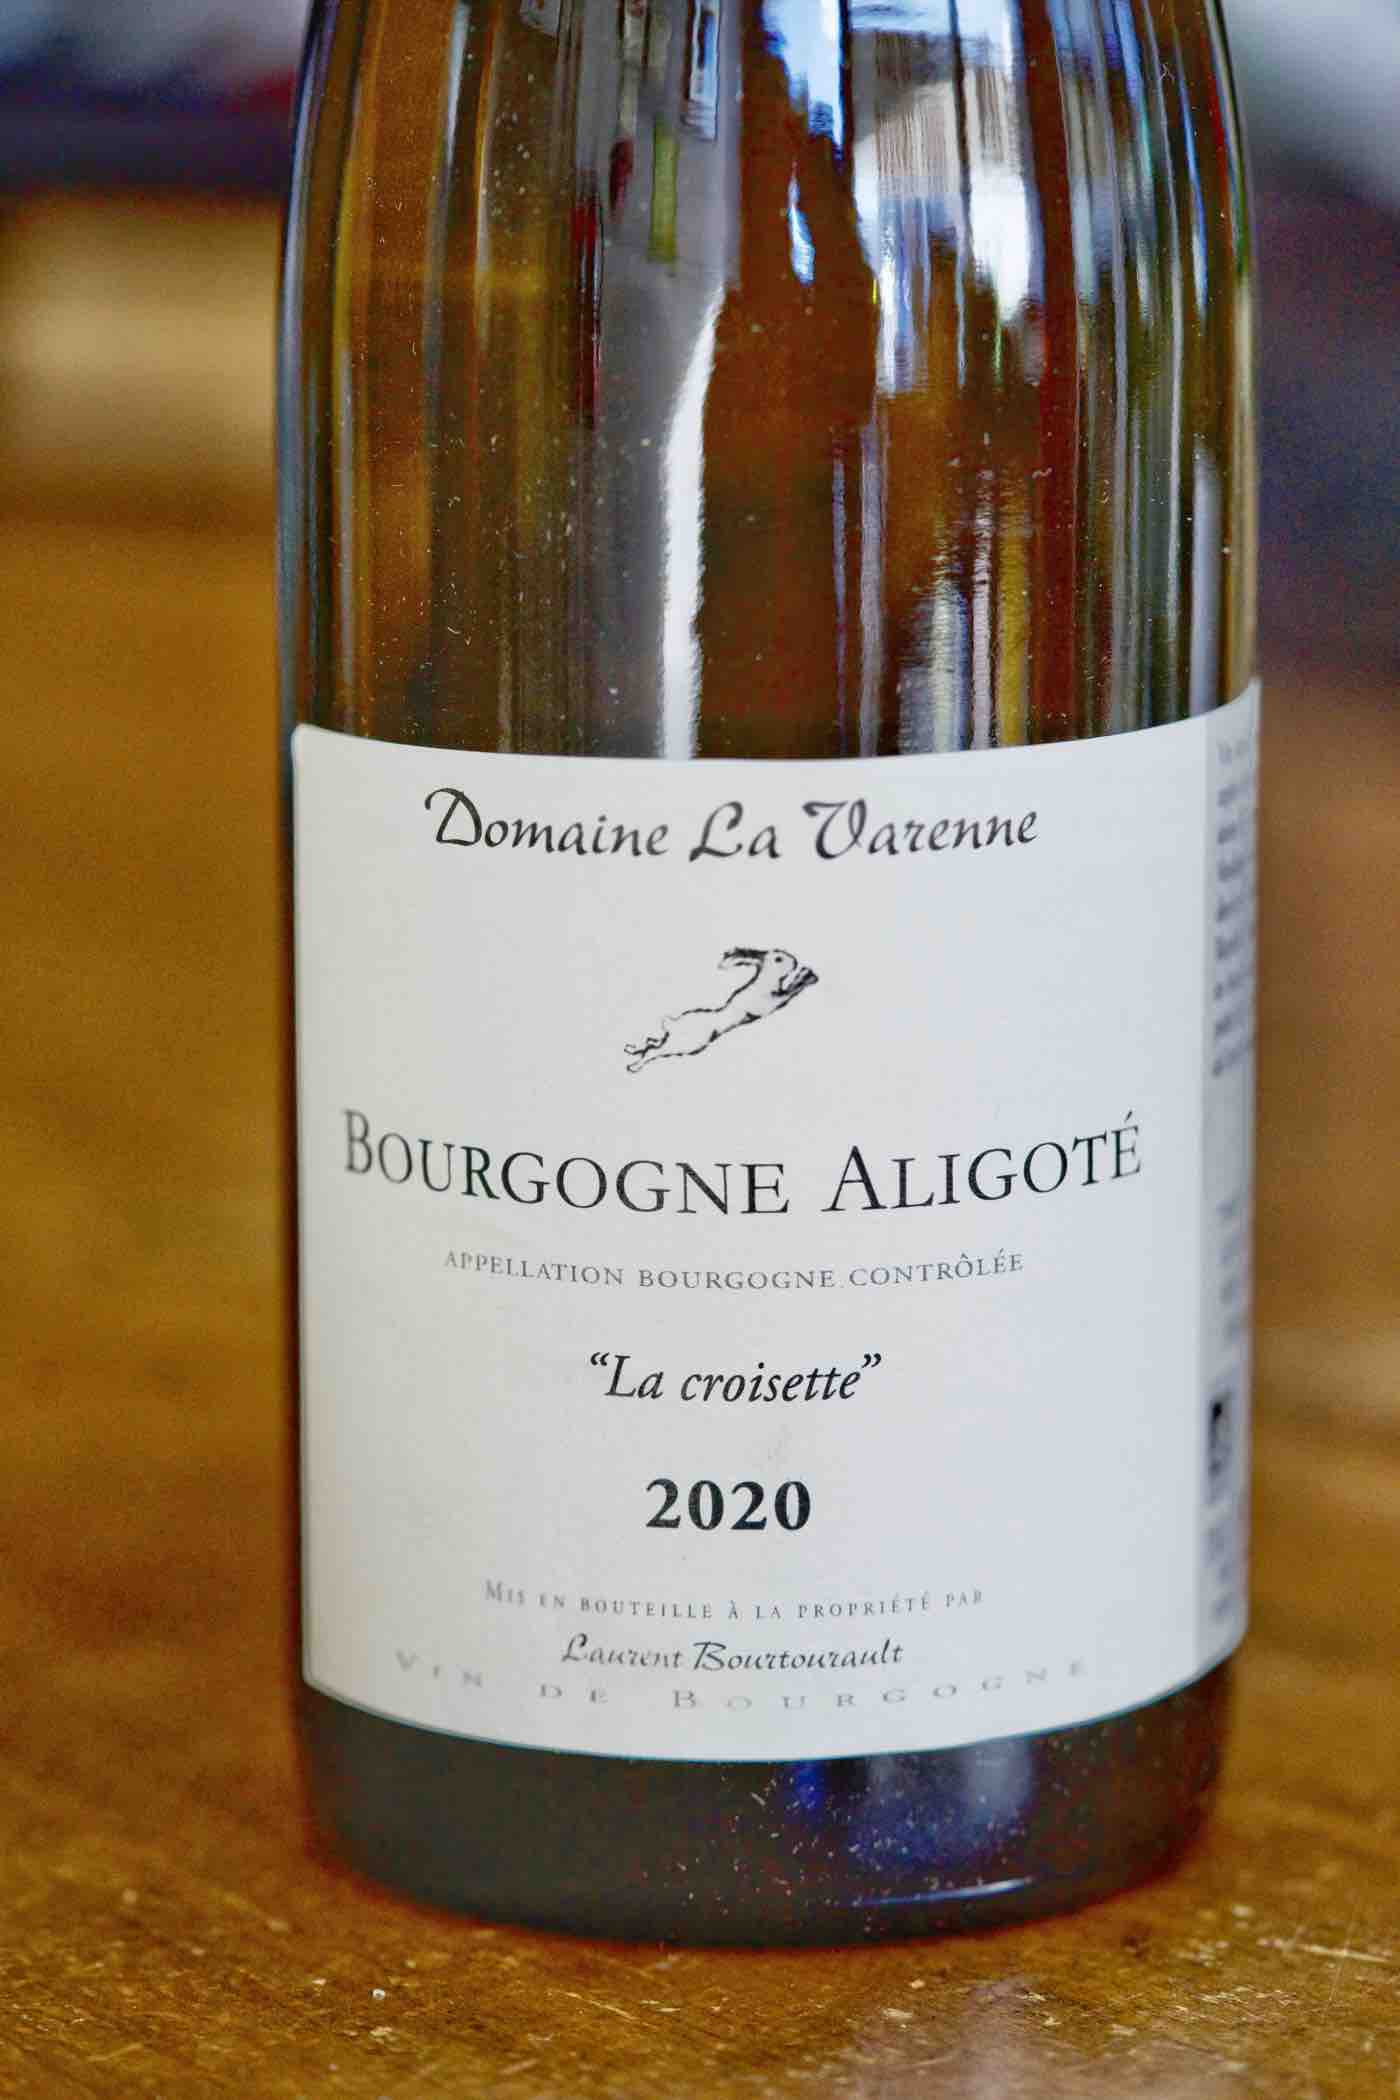 Bourgogne Aligoté "La croisette", Domaine La Varenne 2020